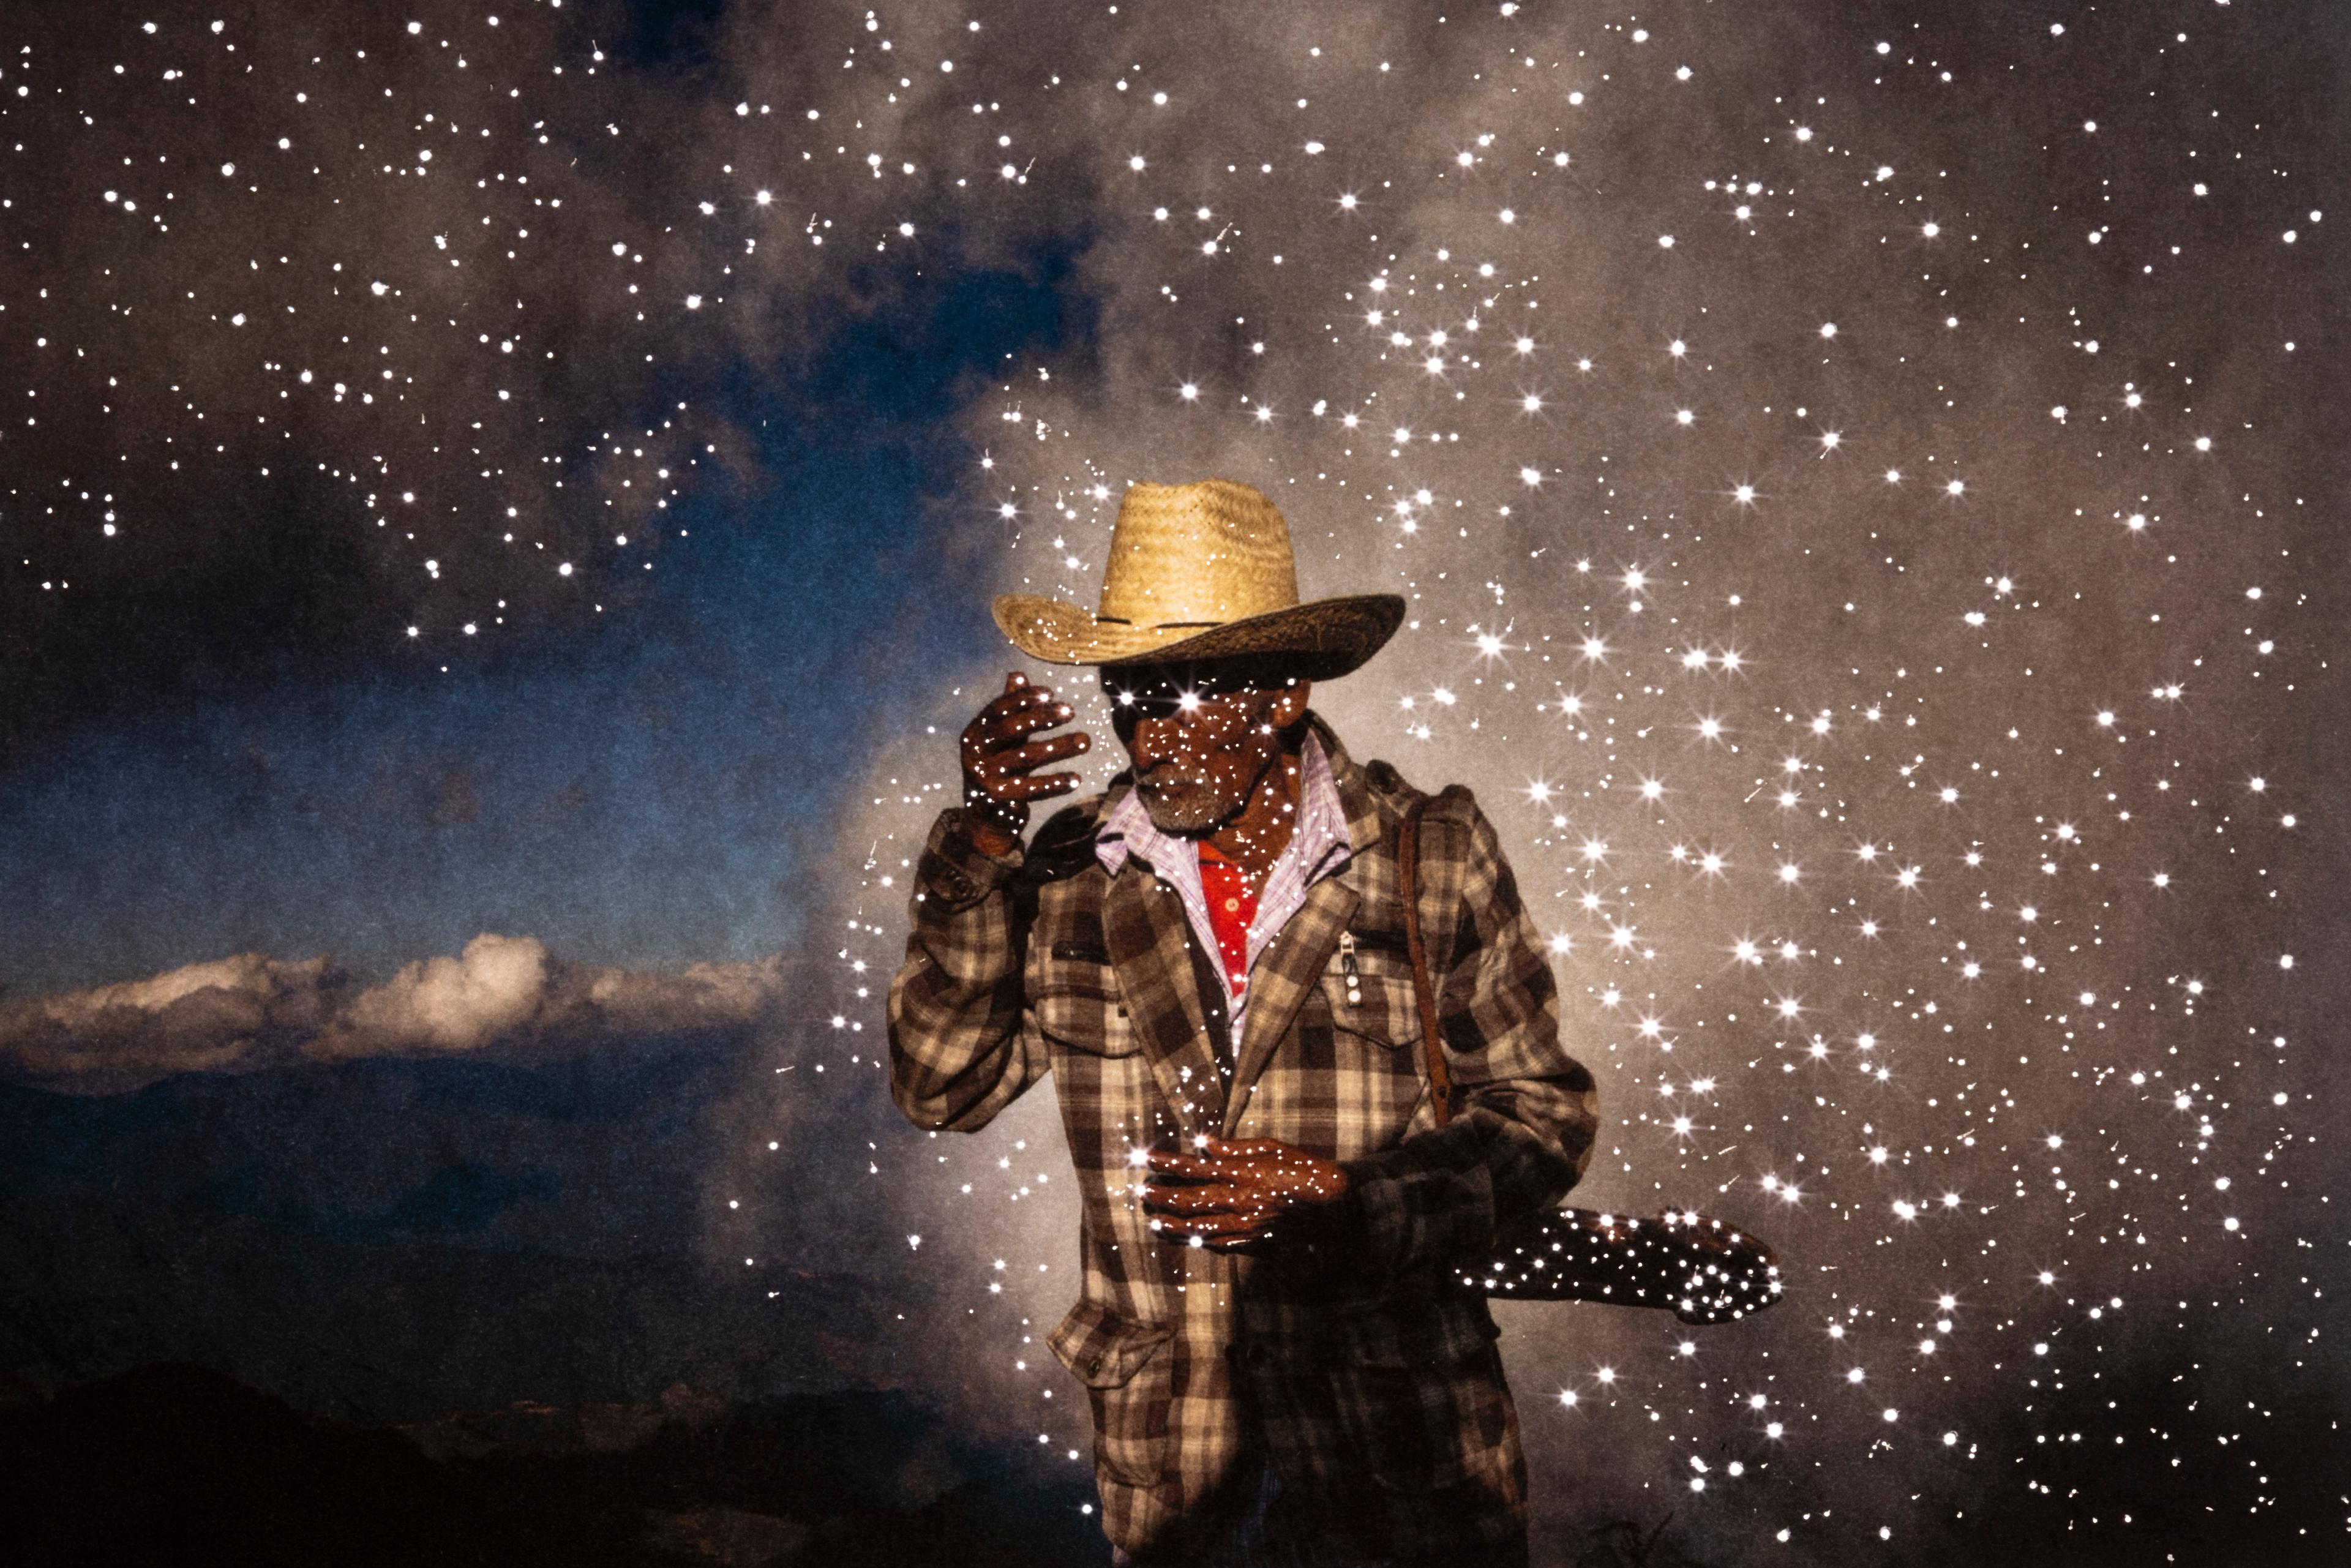 En man i cowboyhatt och kostym som poserar. Han står bakom en stjärnklar himmel och har stjärnor runtomkring sig..